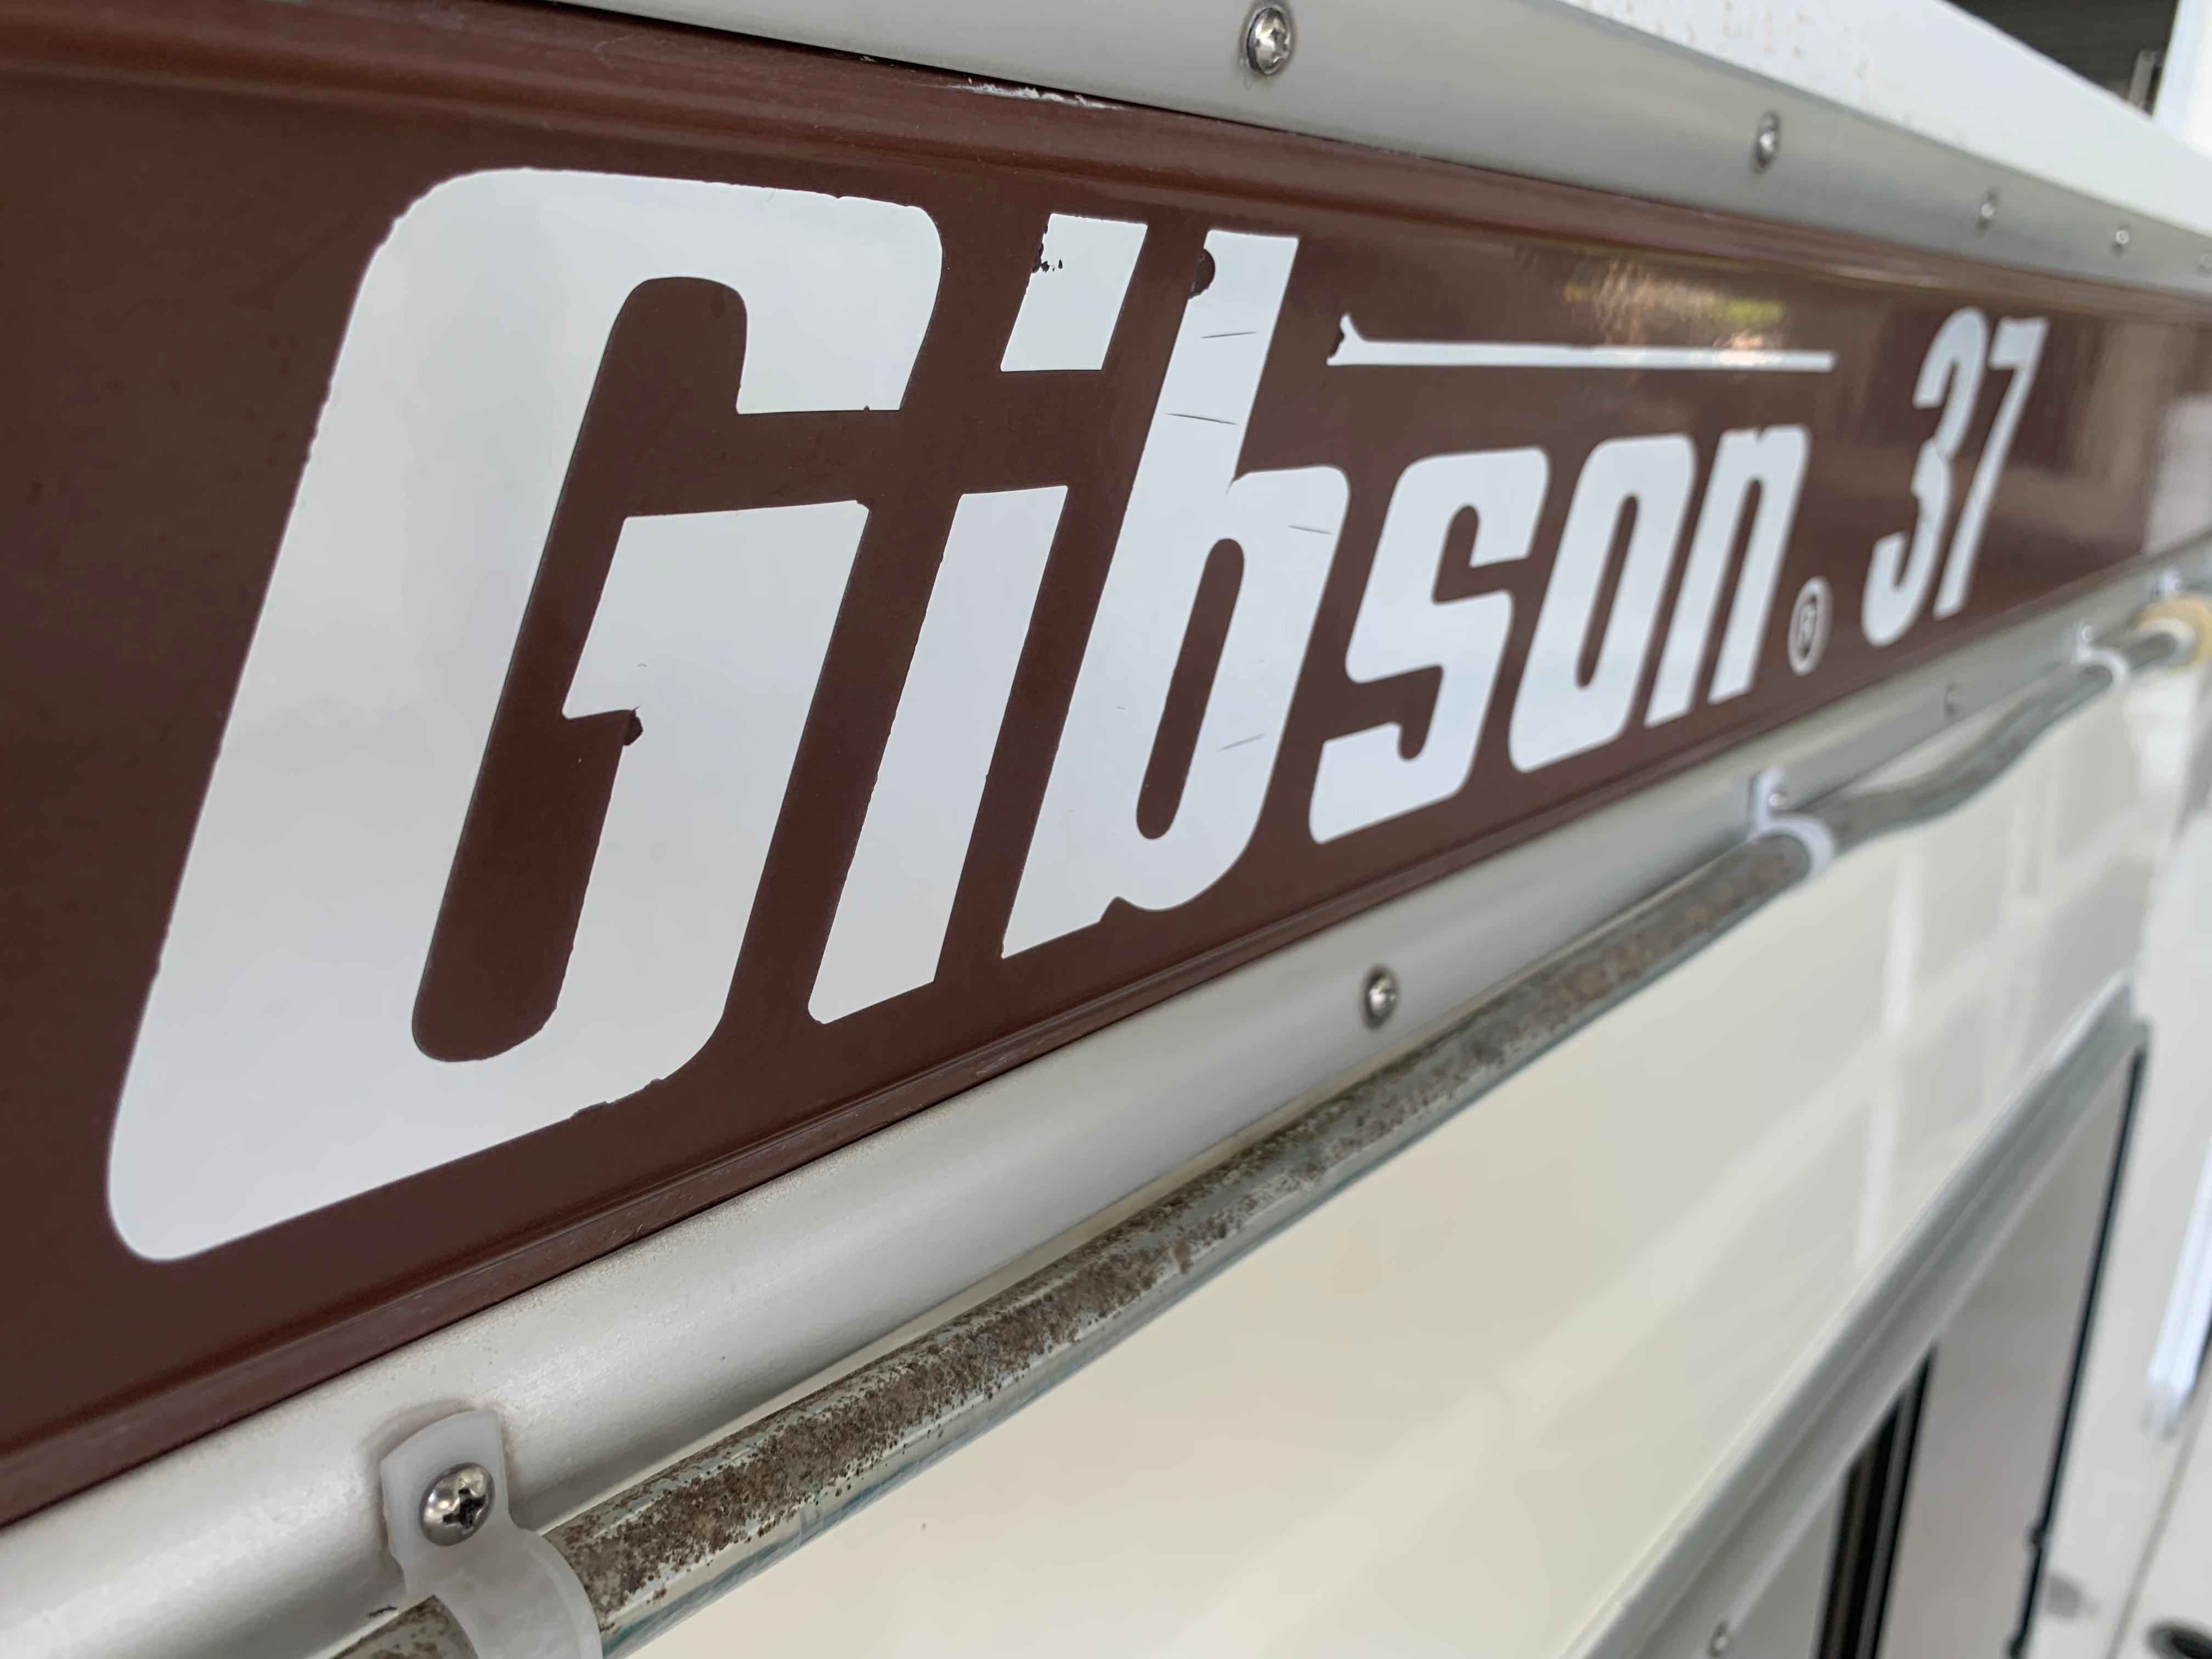 1991 Gibson 37 Standard Houseboat